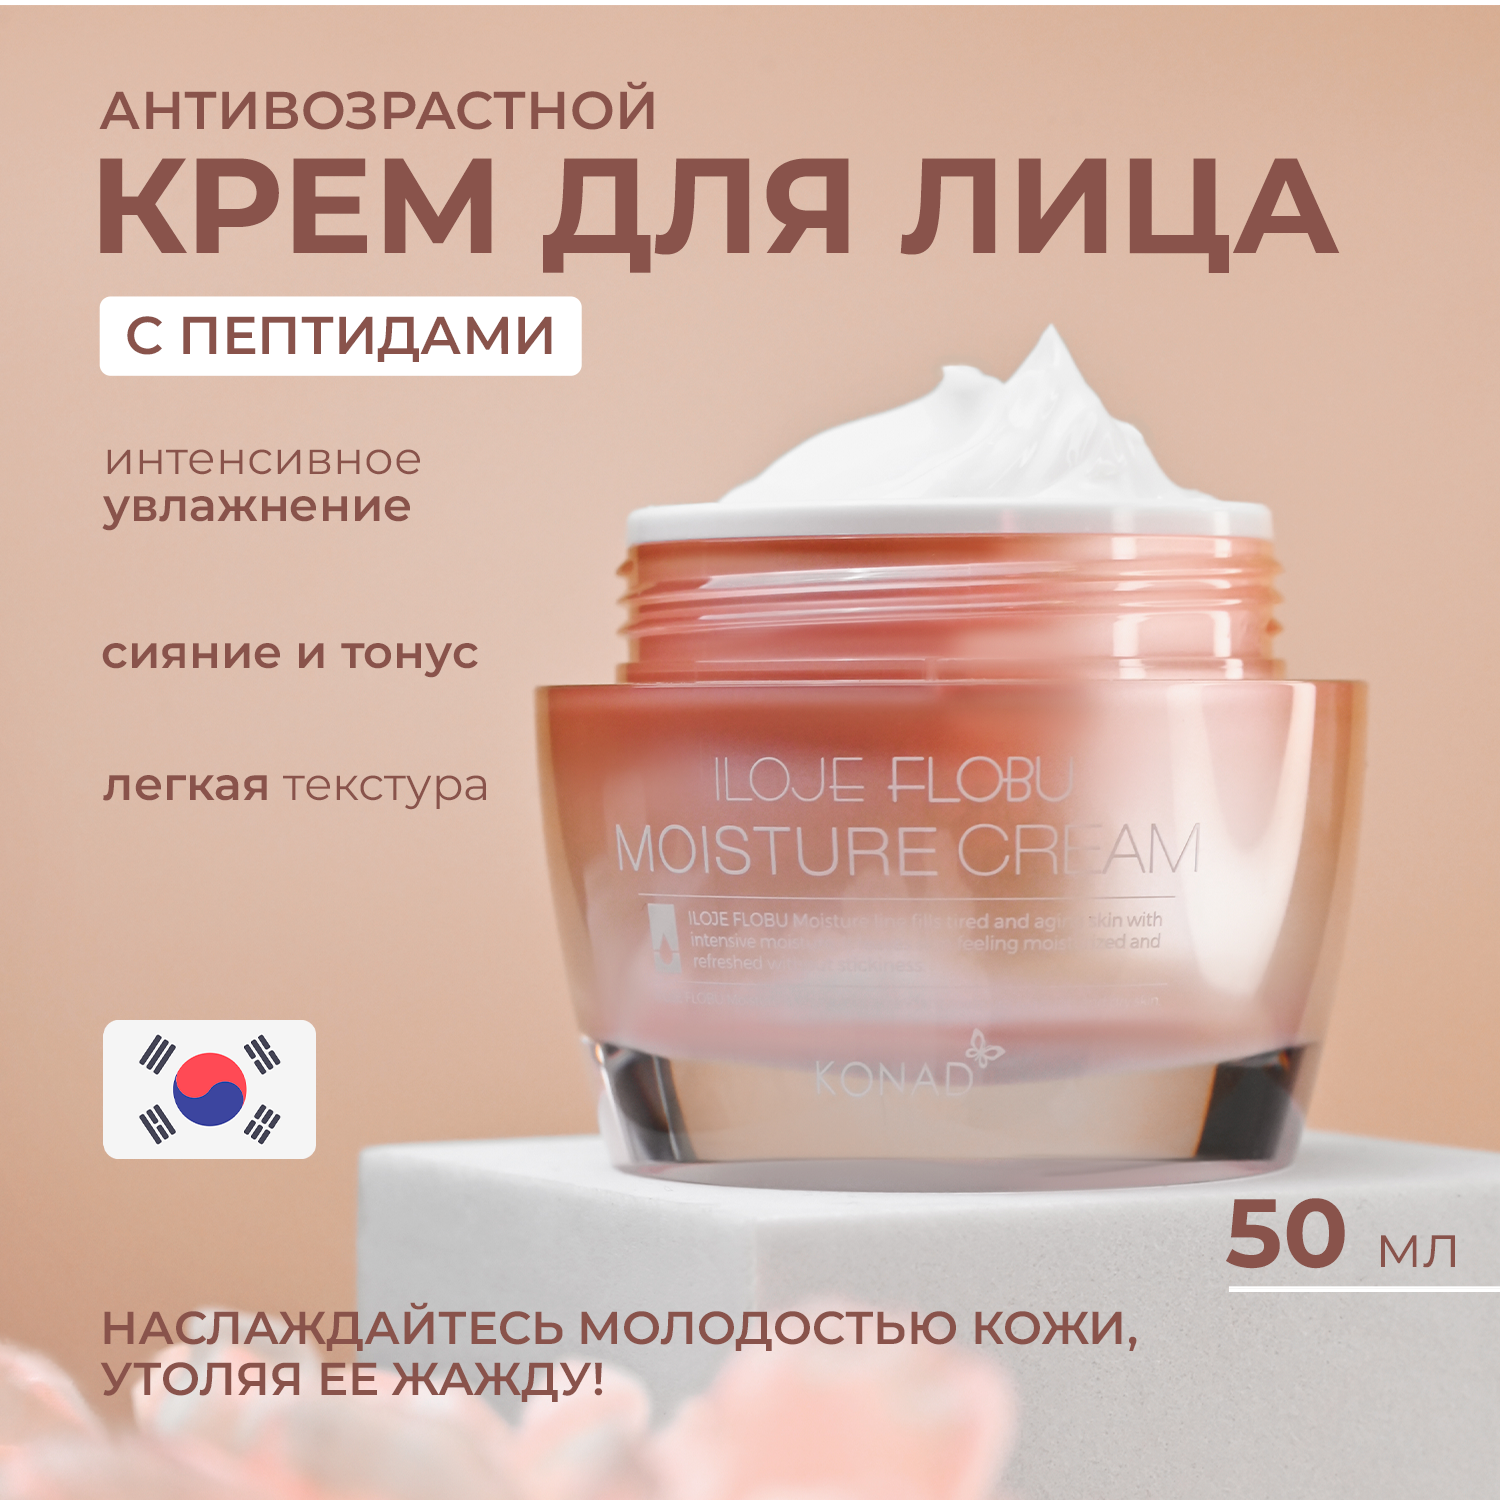 Крем для лица Konad iloje Flobu Moisture Cream увлажняющий с пептидами 50г